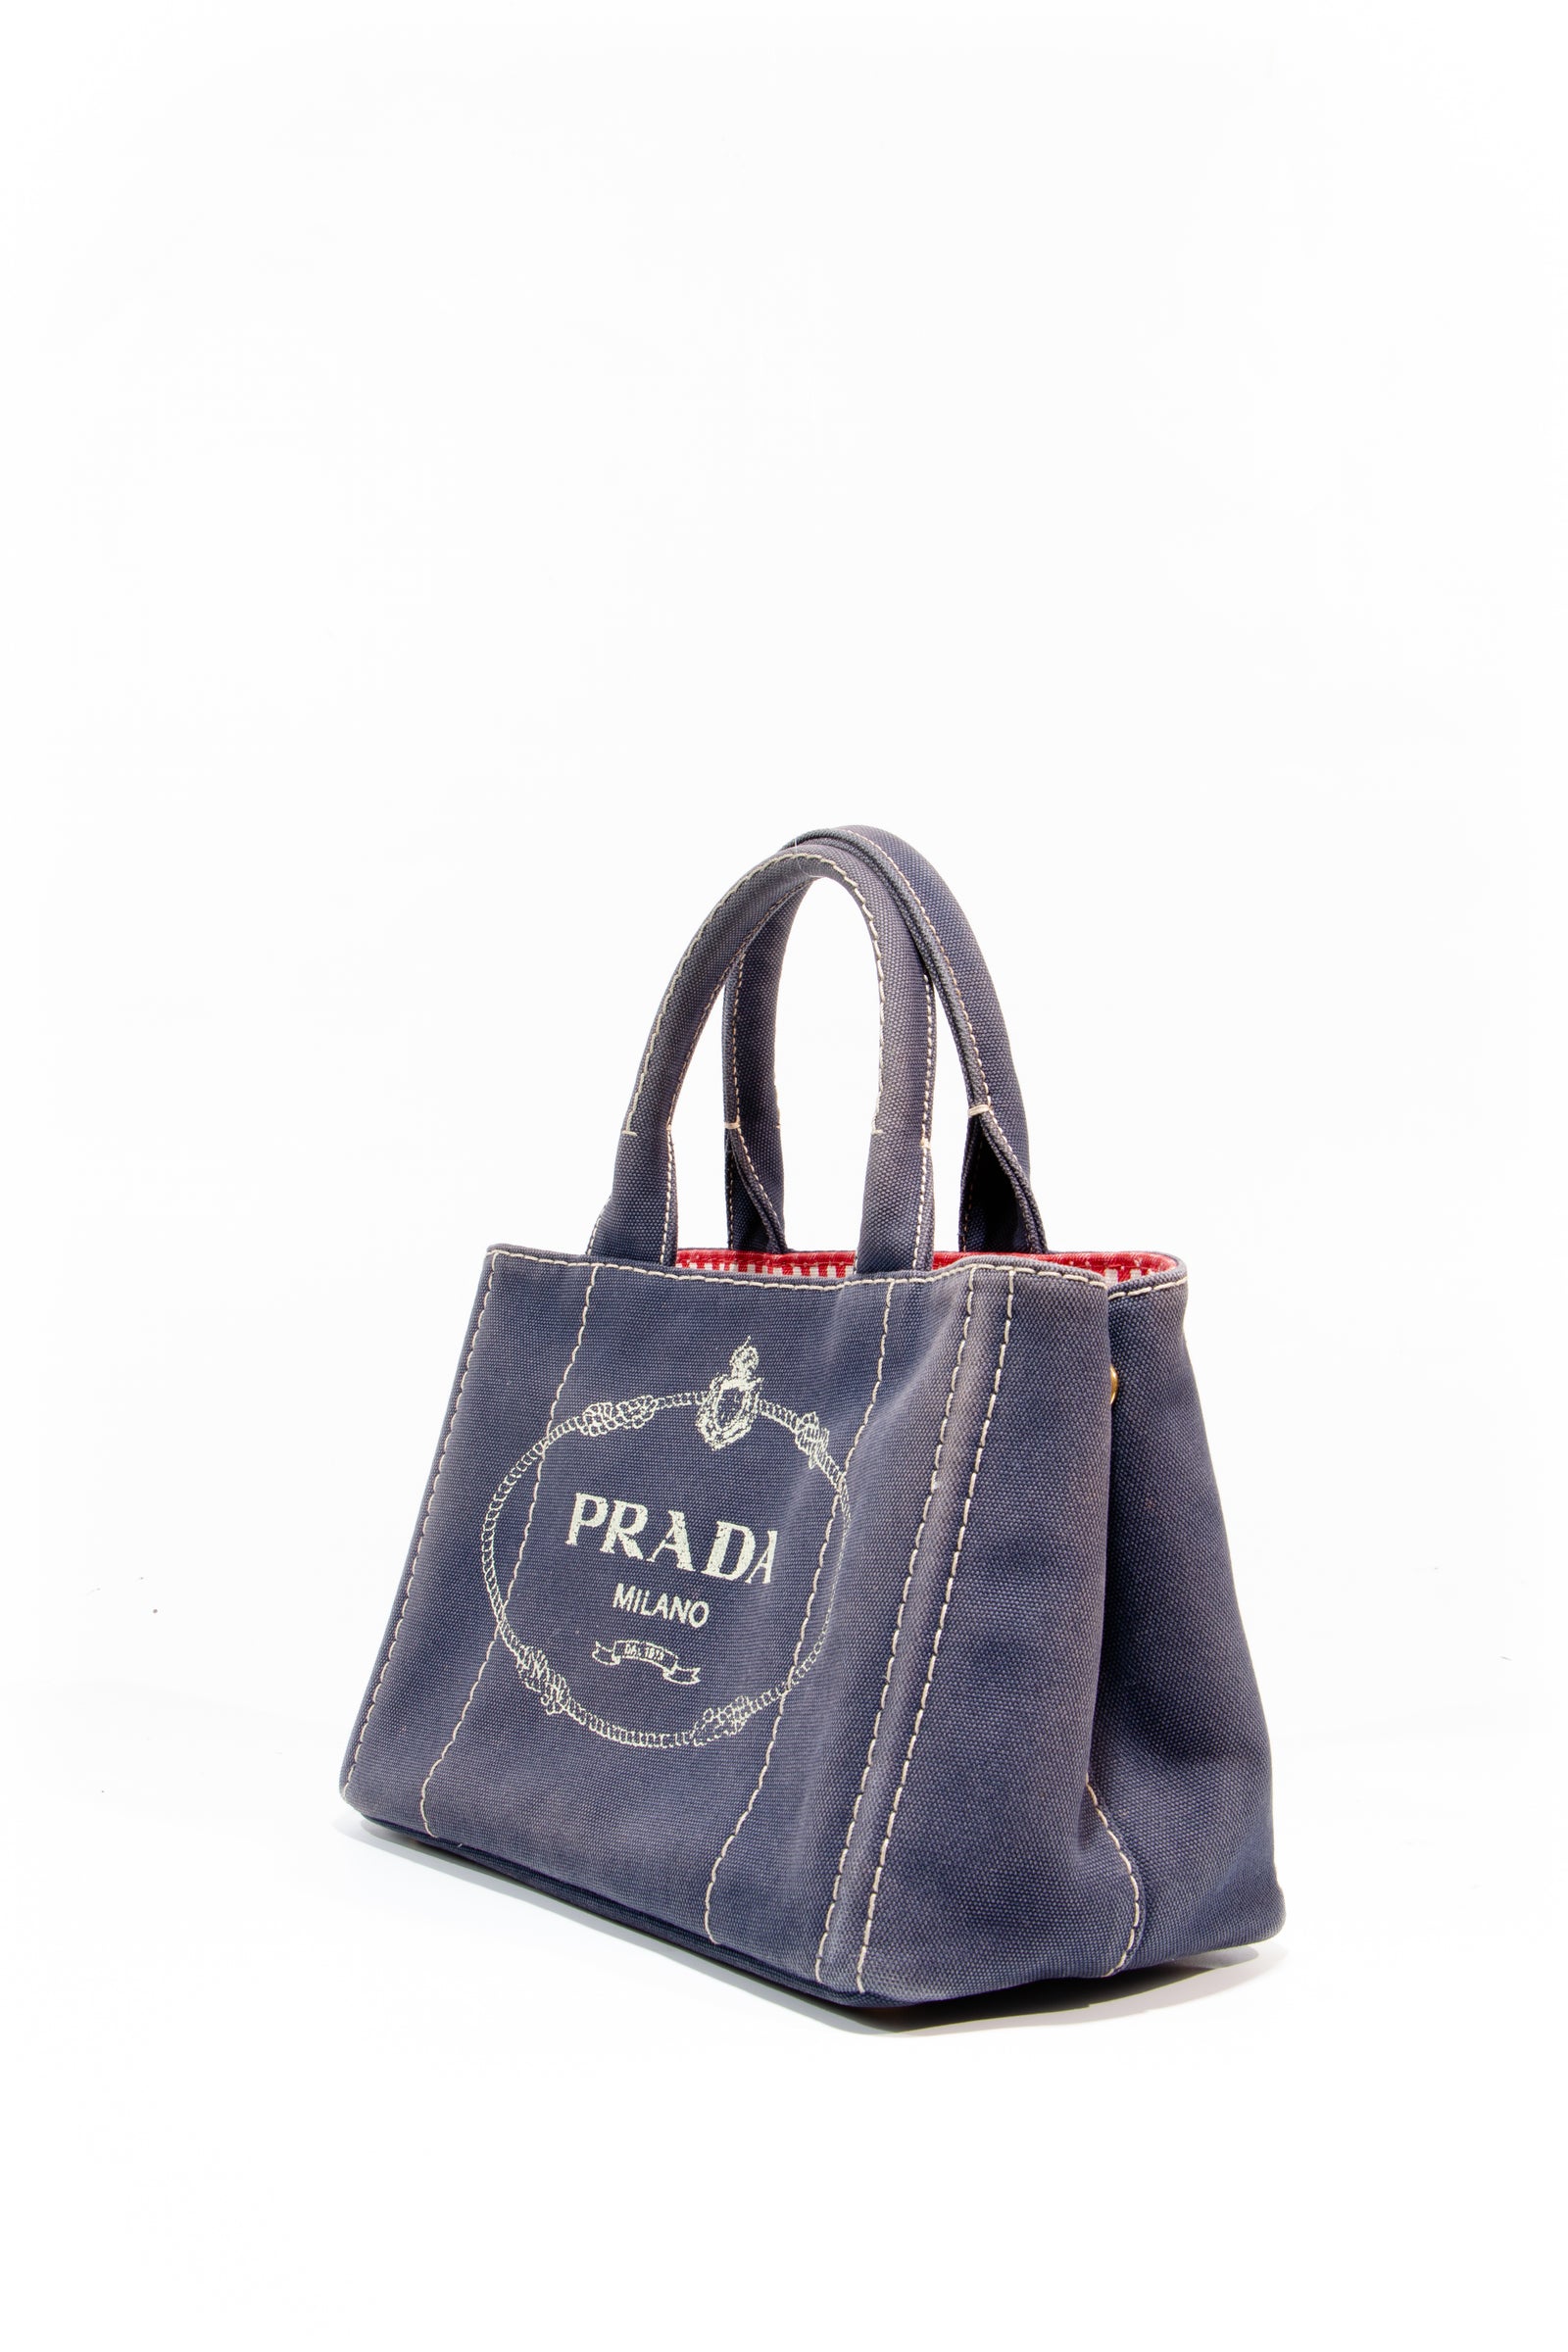 PRADA Galleria Tote Bag – Timeless Vintage Company